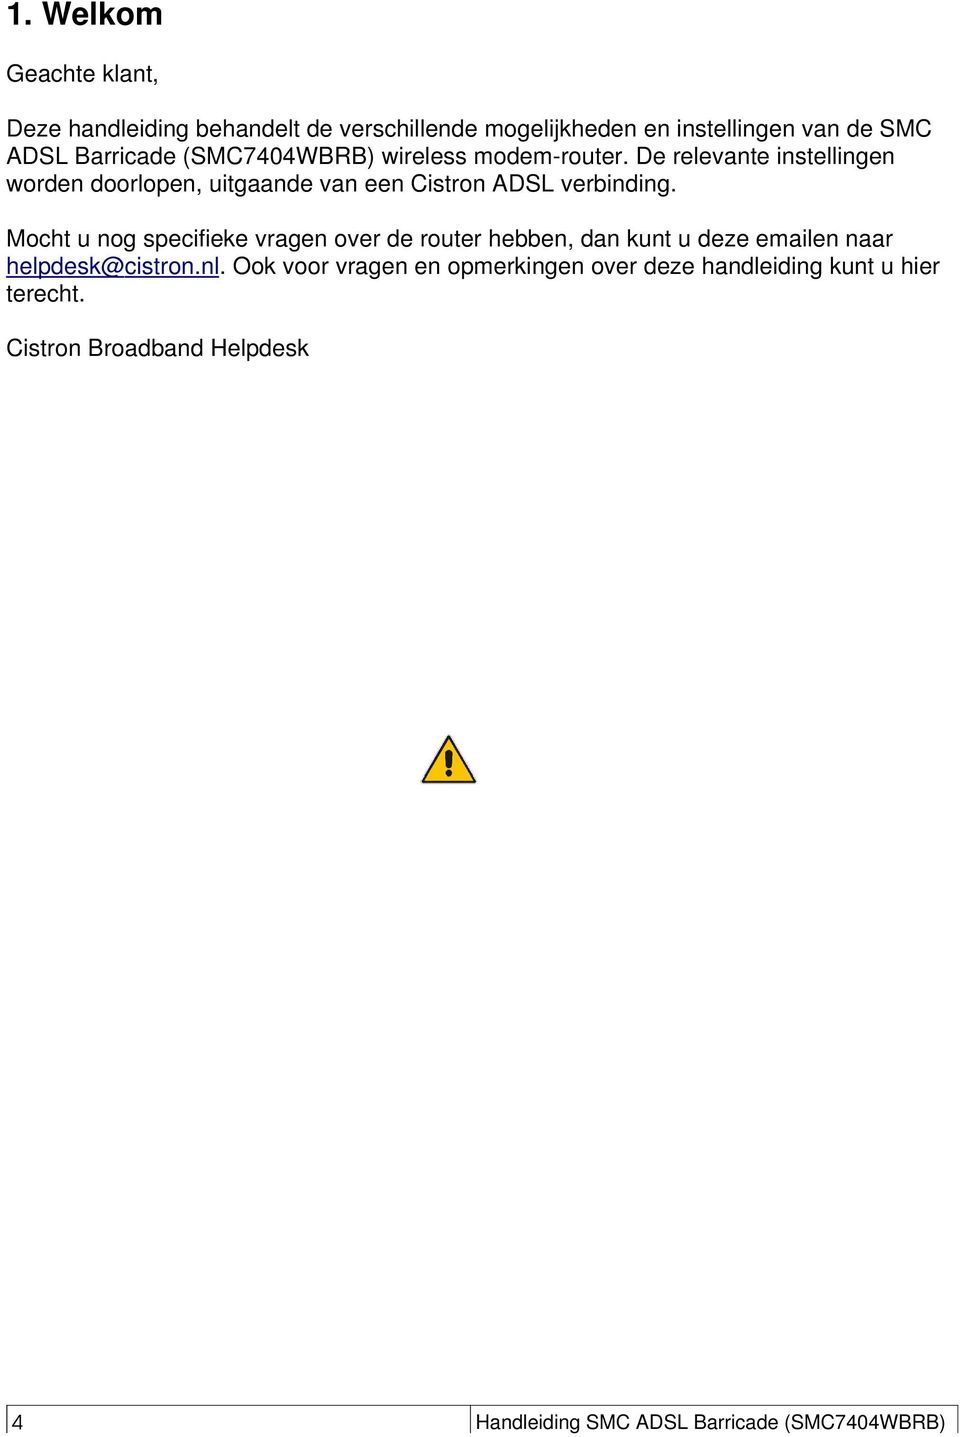 Mocht u nog specifieke vragen over de router hebben, dan kunt u deze emailen naar helpdesk@cistron.nl.